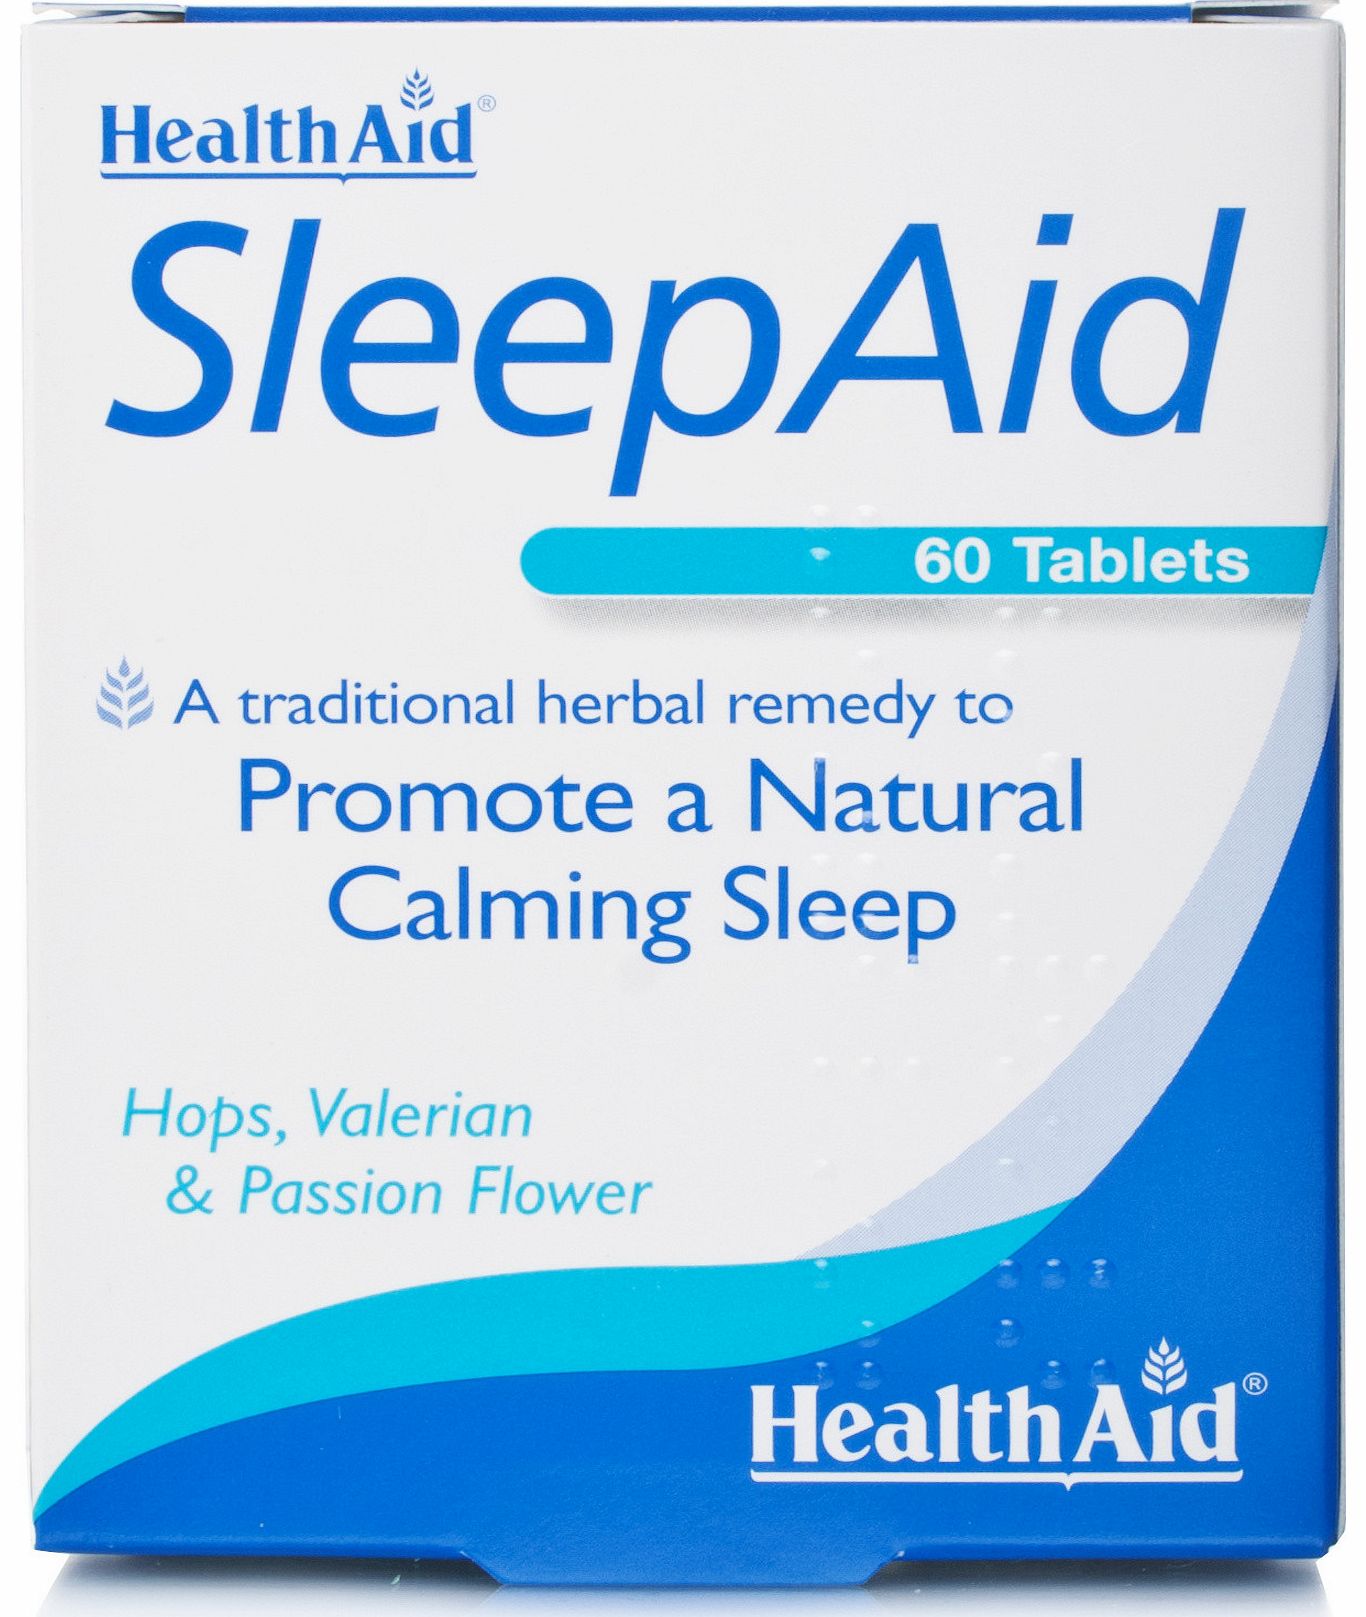 Health Aid SleepAid tablets